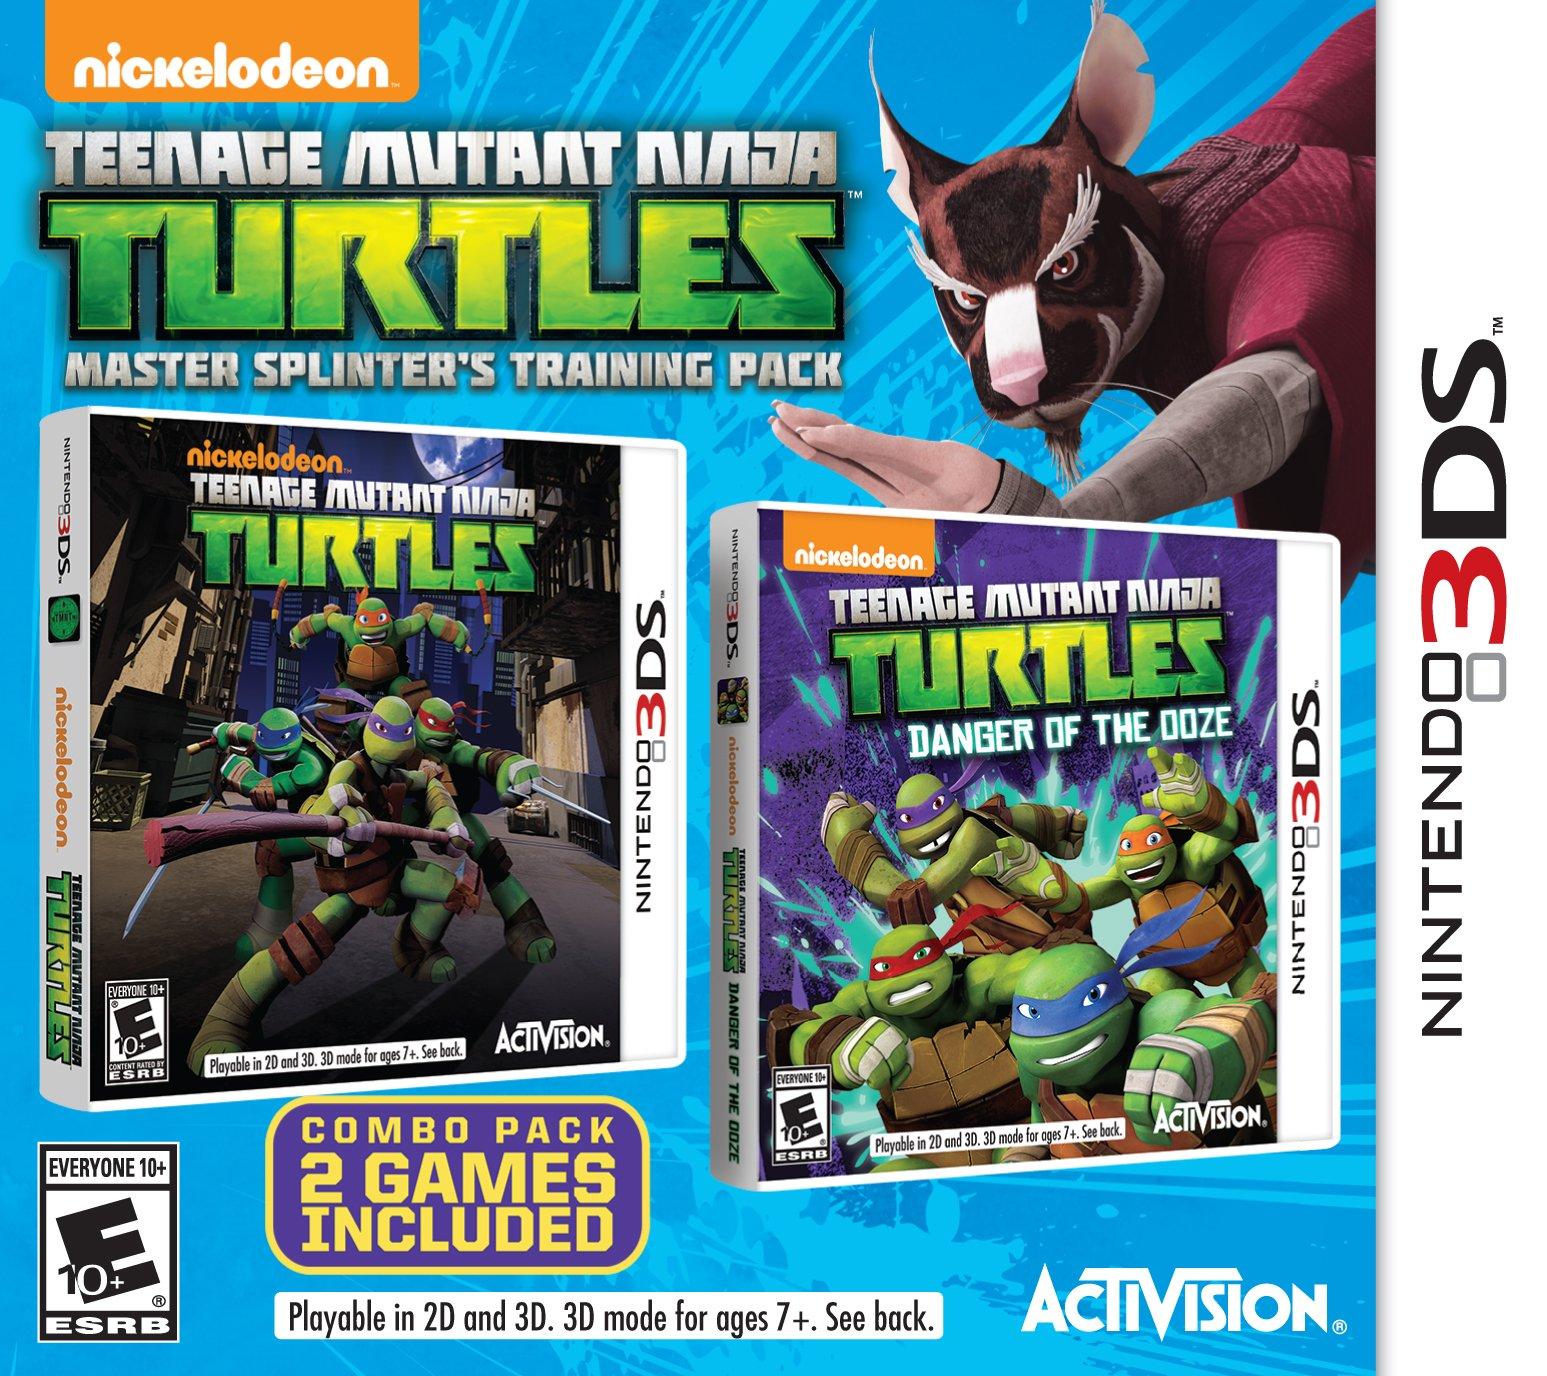 Teenage Mutant Ninja Turtles: Master Splinter's Training Pack - Nintendo 3DS